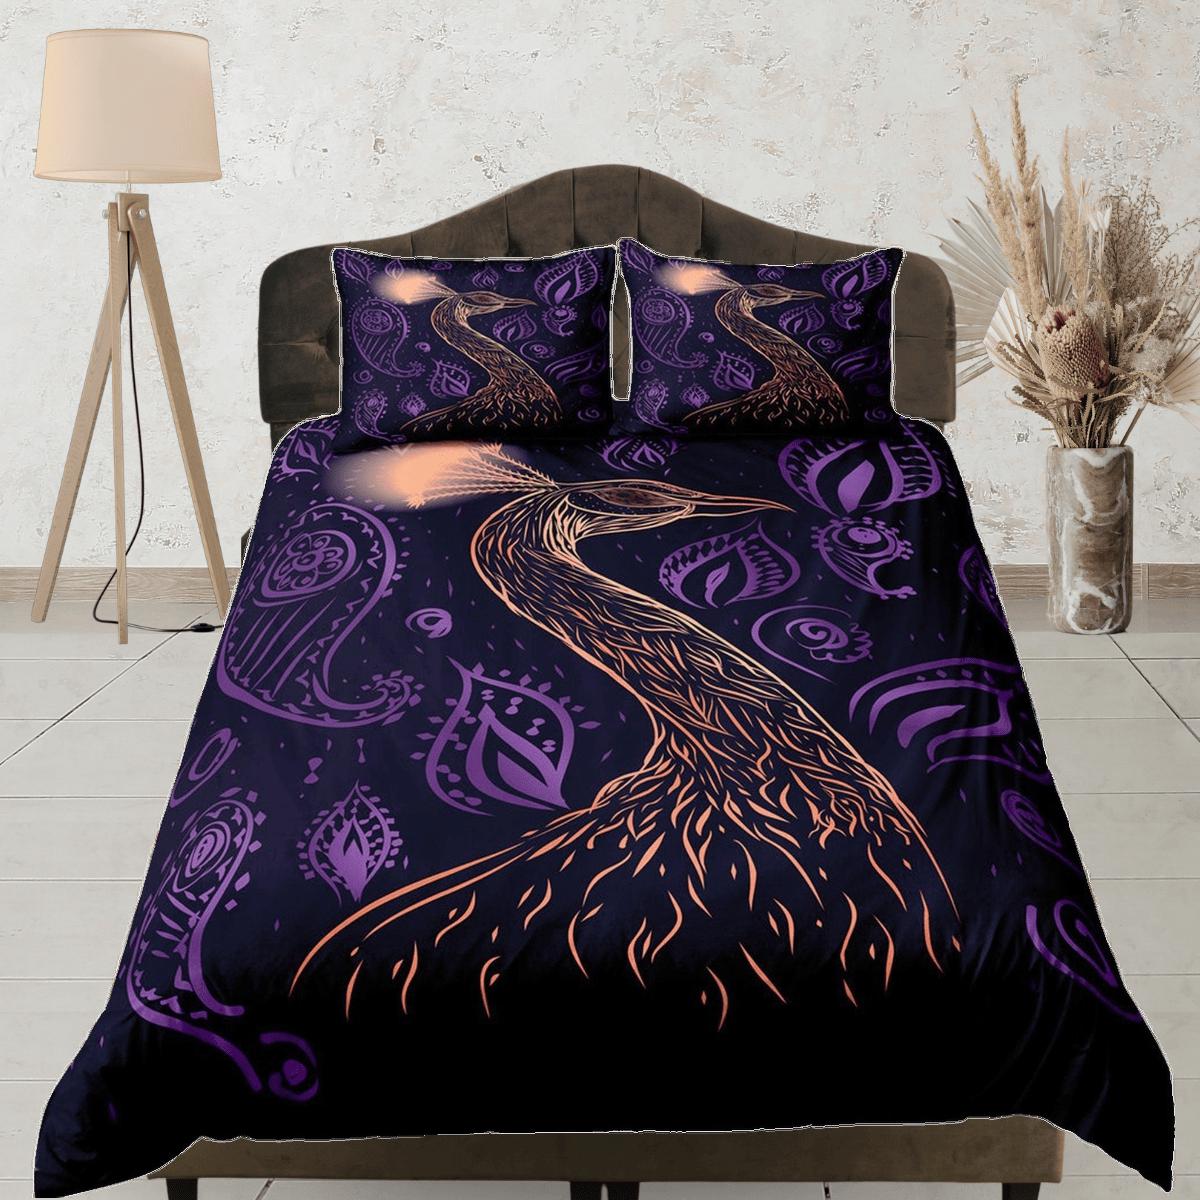 daintyduvet peacock decor purple aesthetic bedding set full, luxury duvet cover queen, king, boho duvet, designer bedding, maximalist bedspread